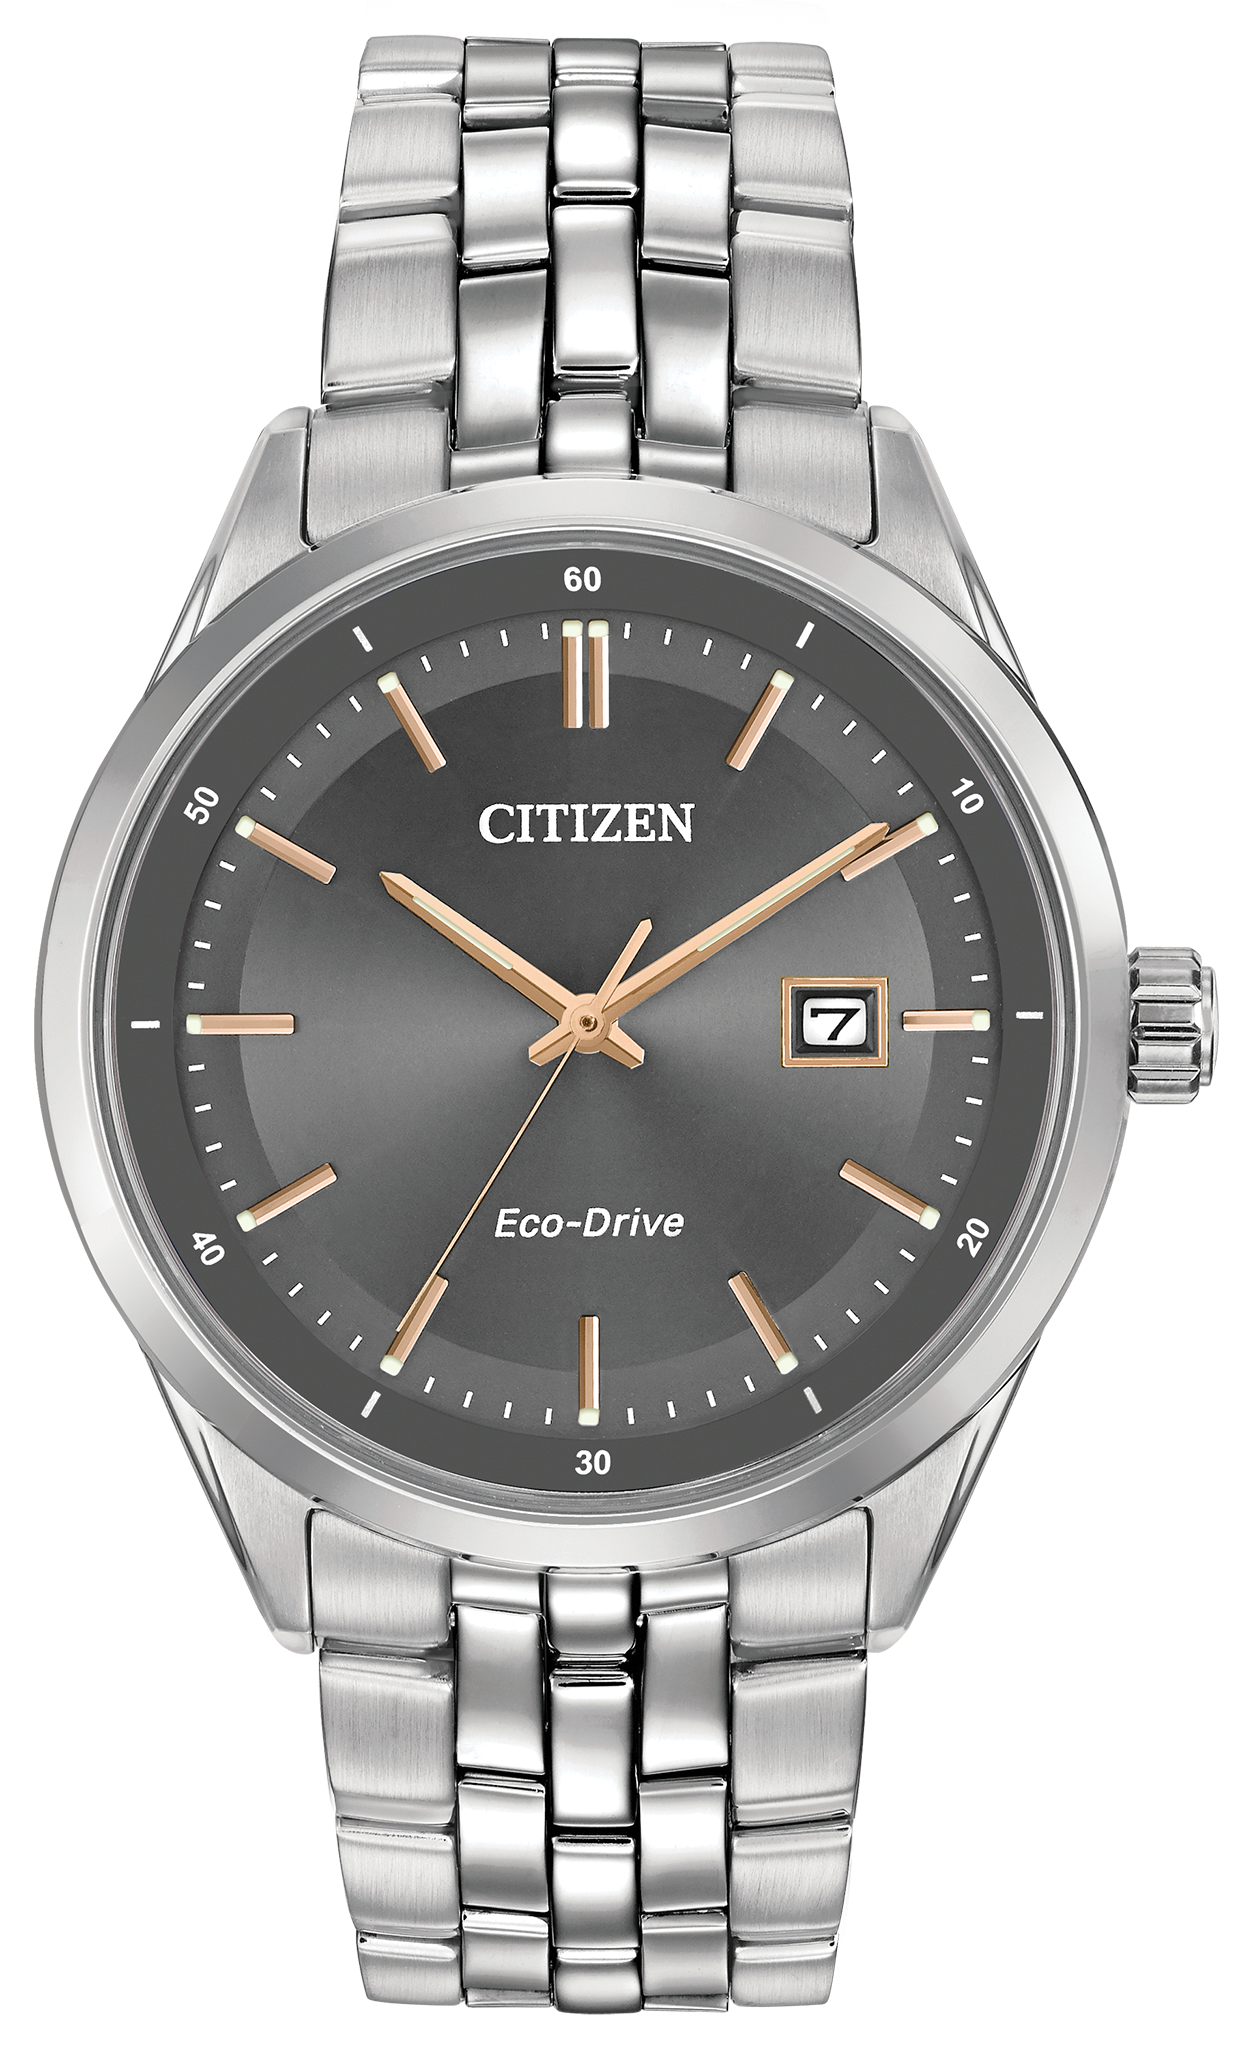 【お買い得定番】CITIZEN ecodrive シルバー 時計